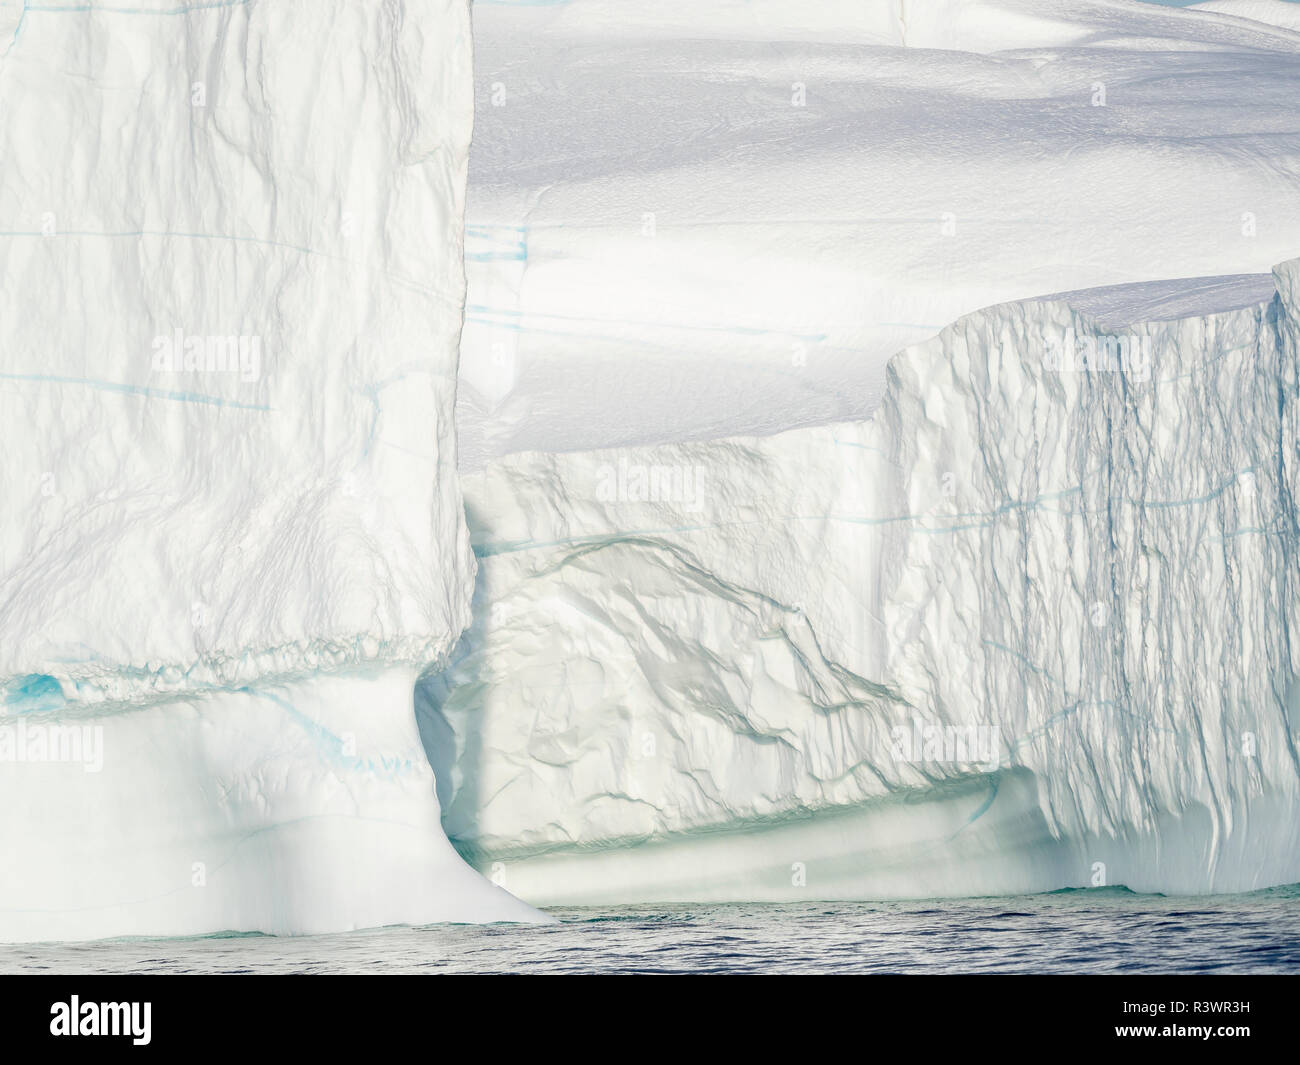 Dans l'Iceberg (Qeqertarsuup Tunua la baie Disko) près d'Ilulissat. Le Groenland, Danemark Banque D'Images